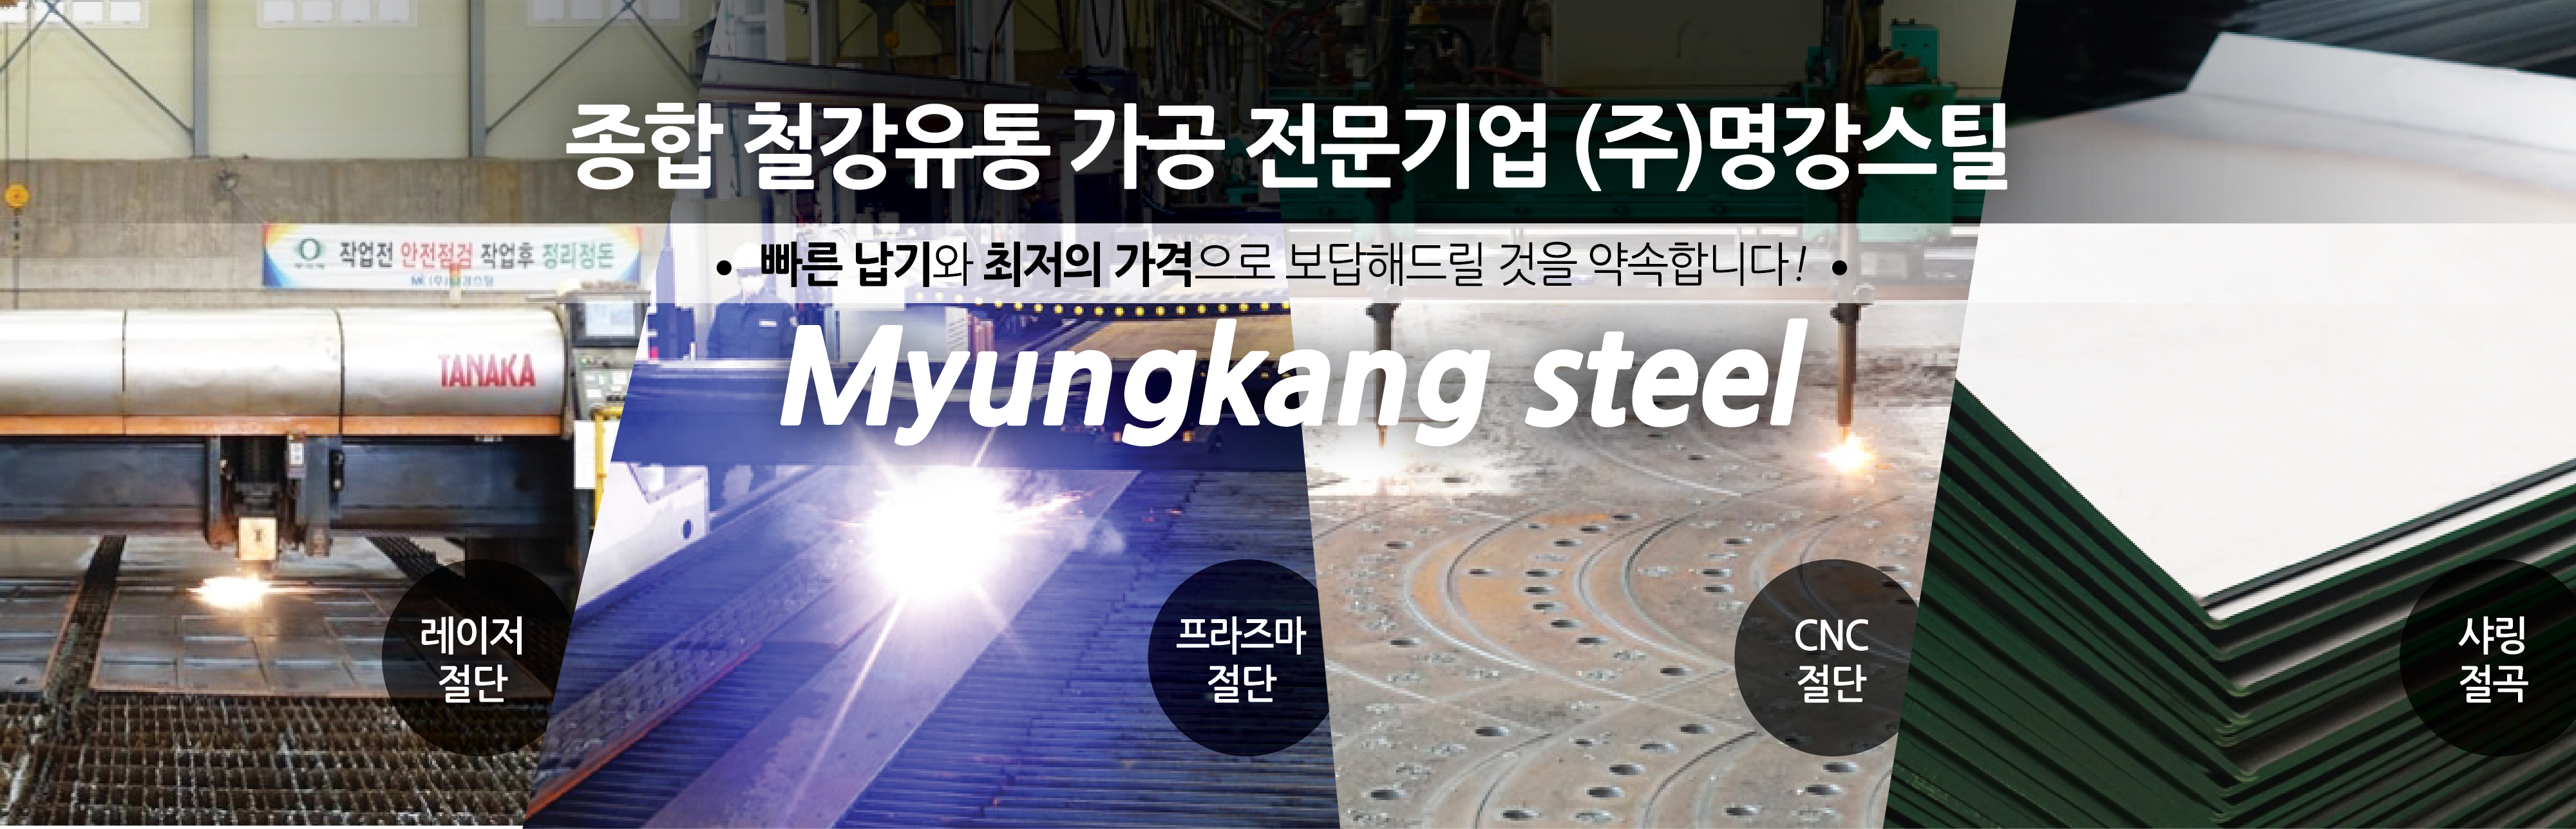 철강전문기업 명강스틸 주식회사 경인을 넘어 국내최고의 철강유통업체로 도약할 것입니다 Myungkang steel